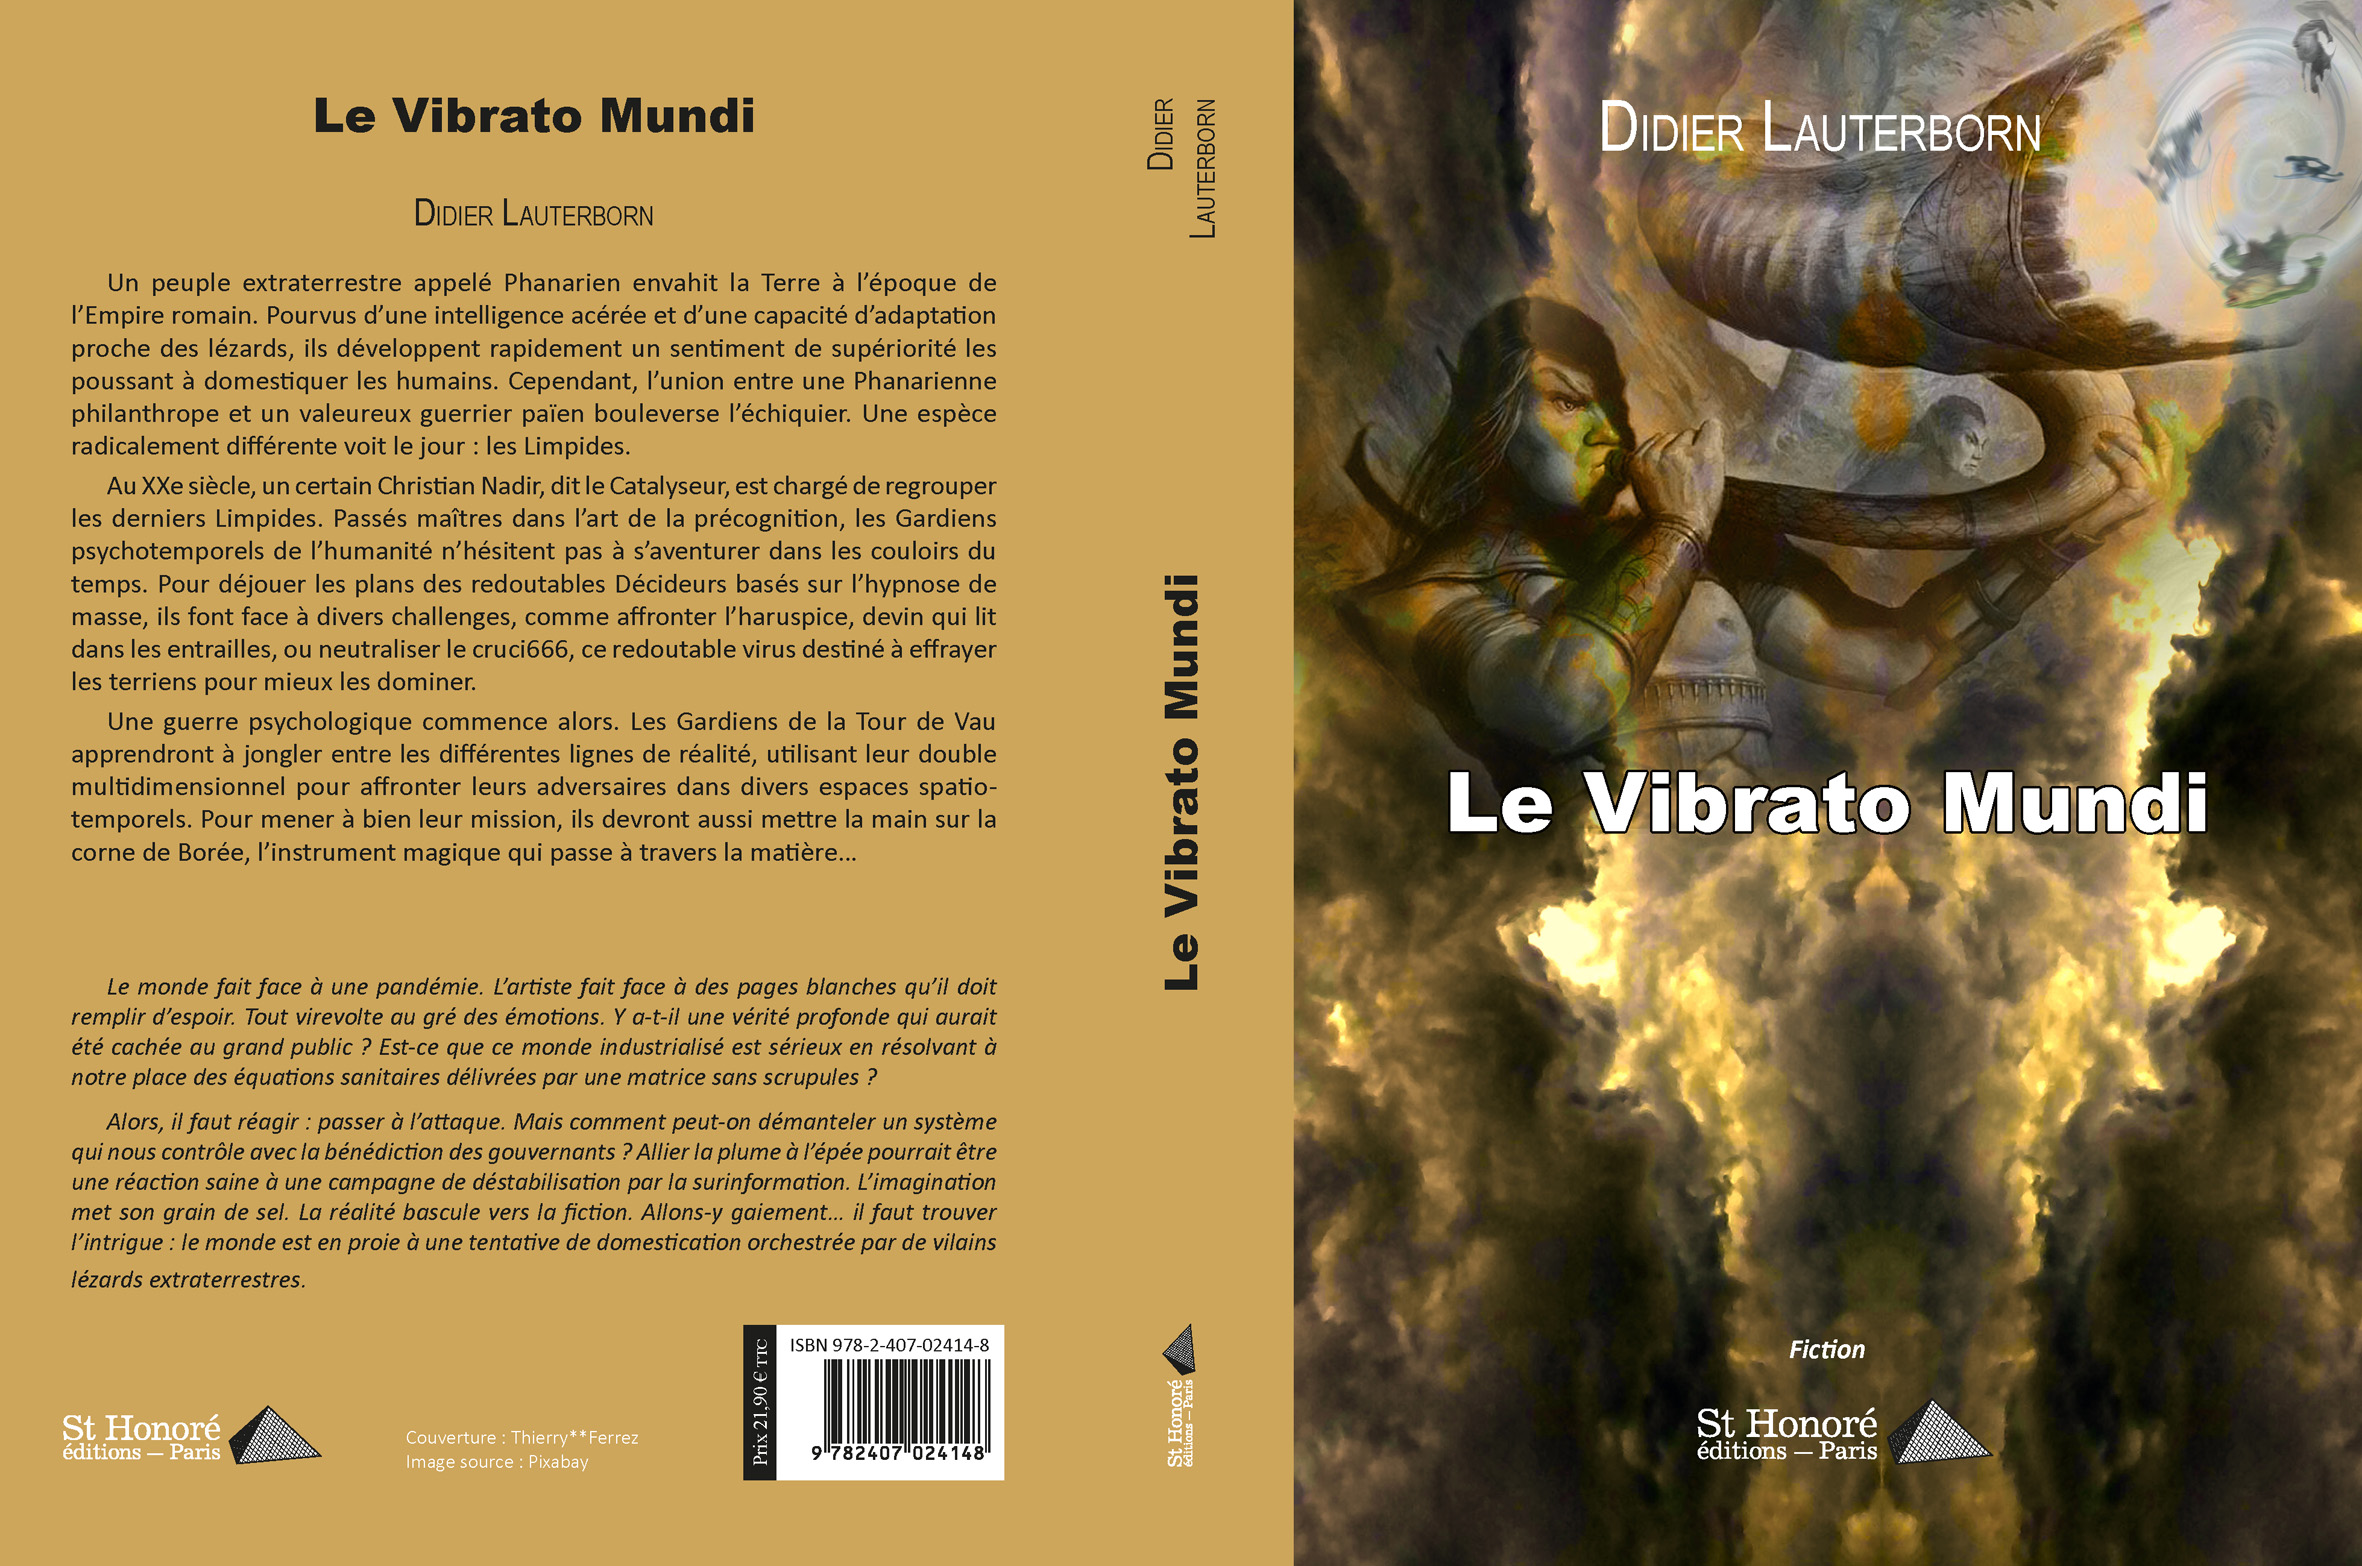 Le vibrato mundi : Troisème roman de l'écrivain Didier Lauterborn